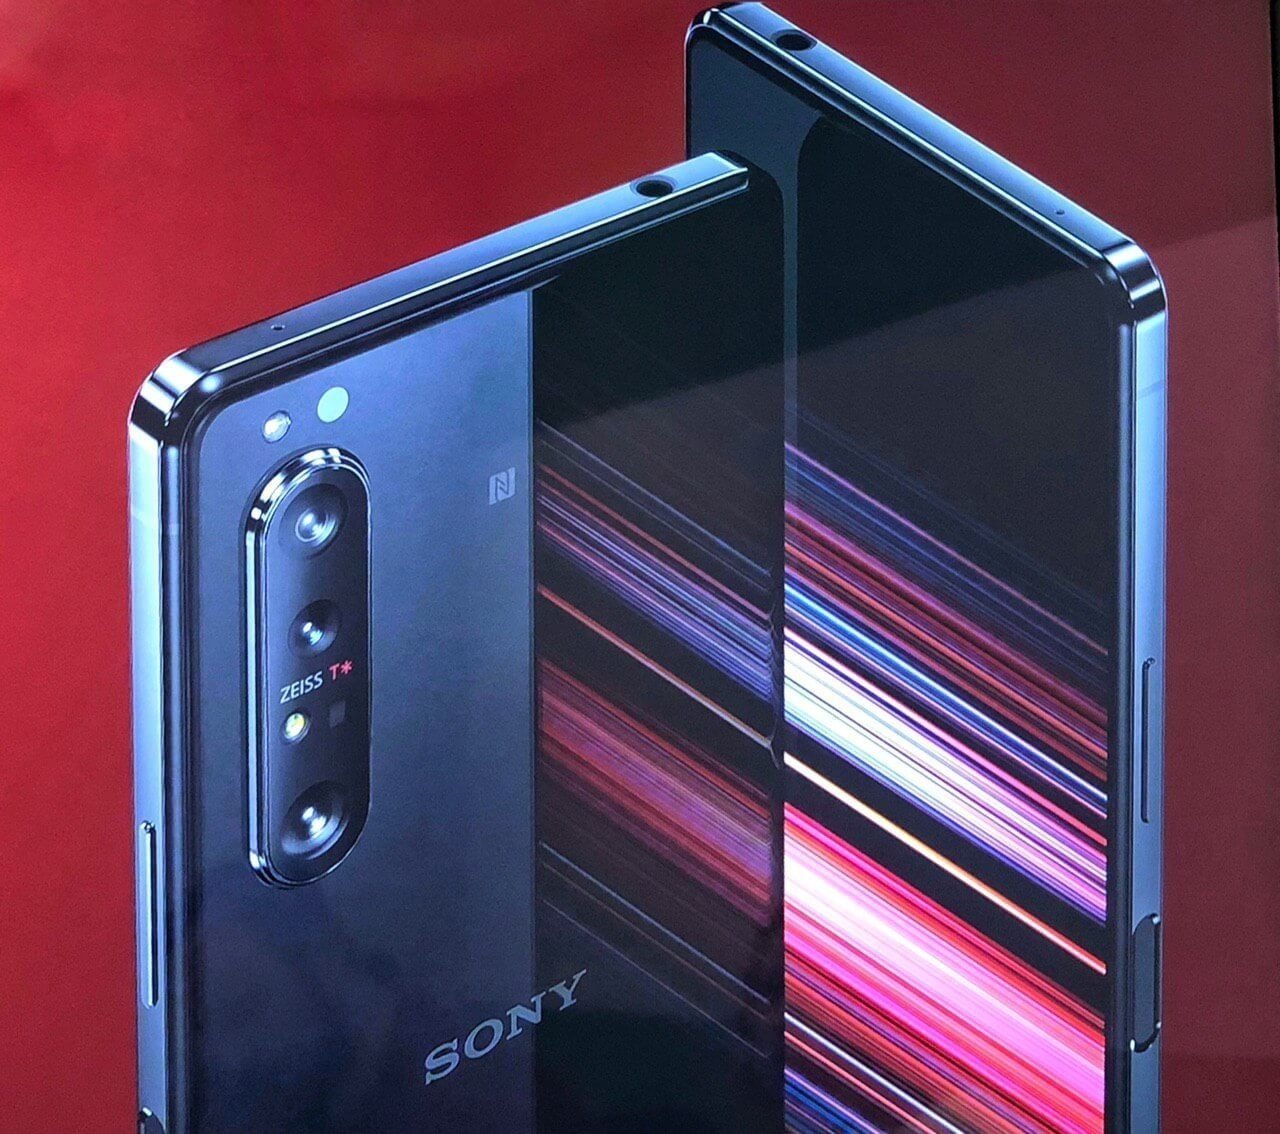 2020 fue el año en el que Sony vendió menos móviles, apenas 3 millones